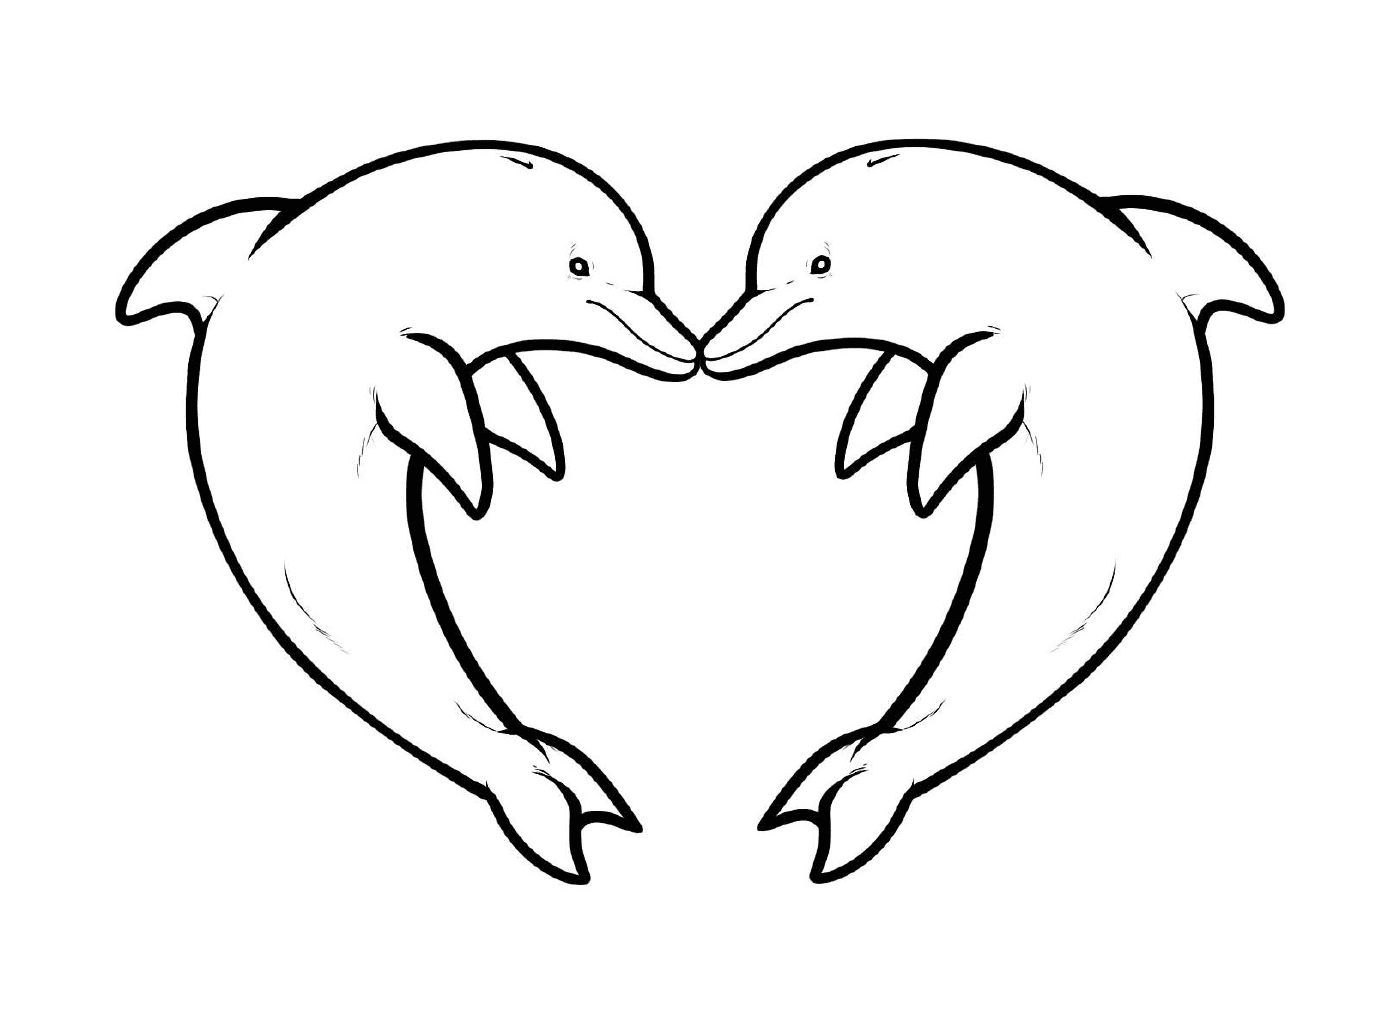  Dois golfinhos formando a forma de um coração 